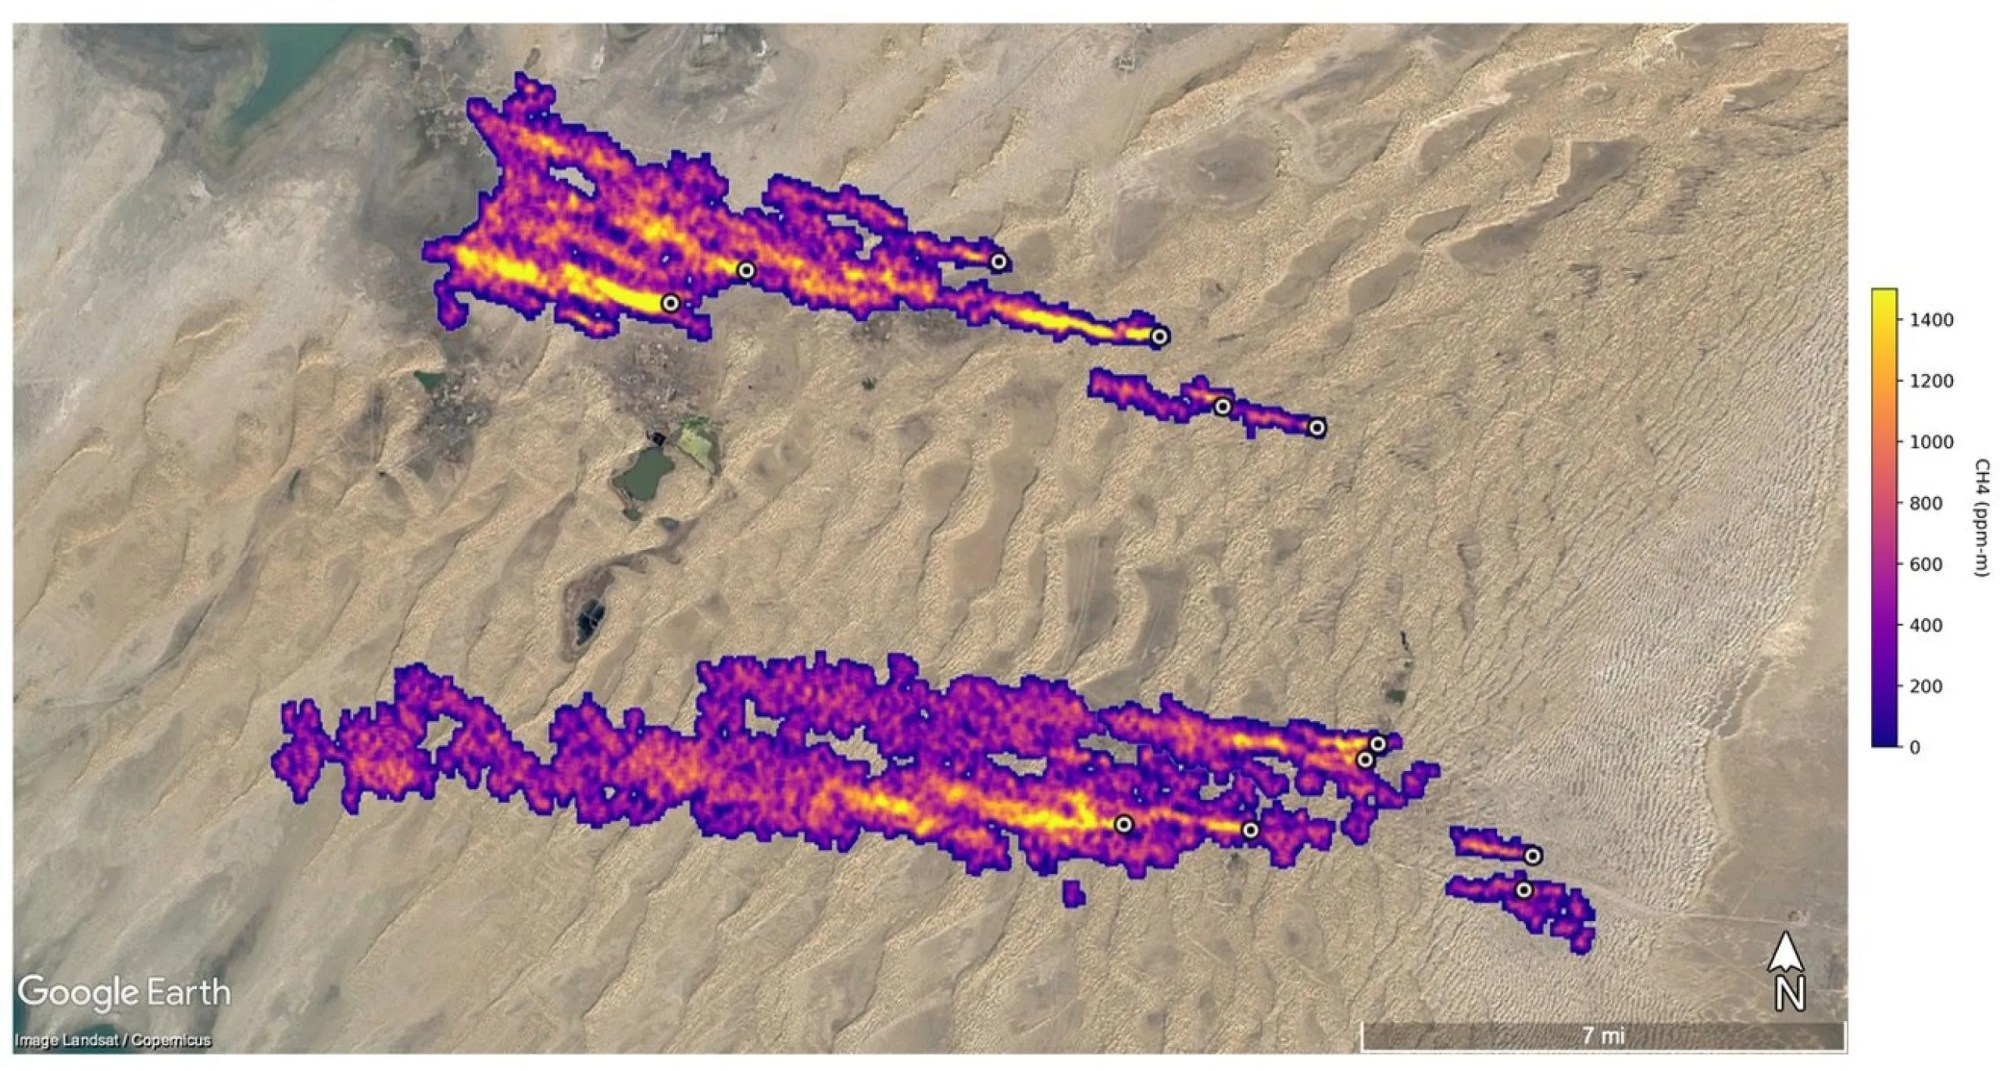 Al este de Hazar, Turkmenistán, una ciudad portuaria en el Mar Caspio, 12 penachos de metano flotan hacia el oeste. Los penachos fueron detectados por la misión EMIT de la NASA y algunos de ellos se extienden por más de 32 kilómetros (20 millas). Crédito: NASA/JPL-Caltech